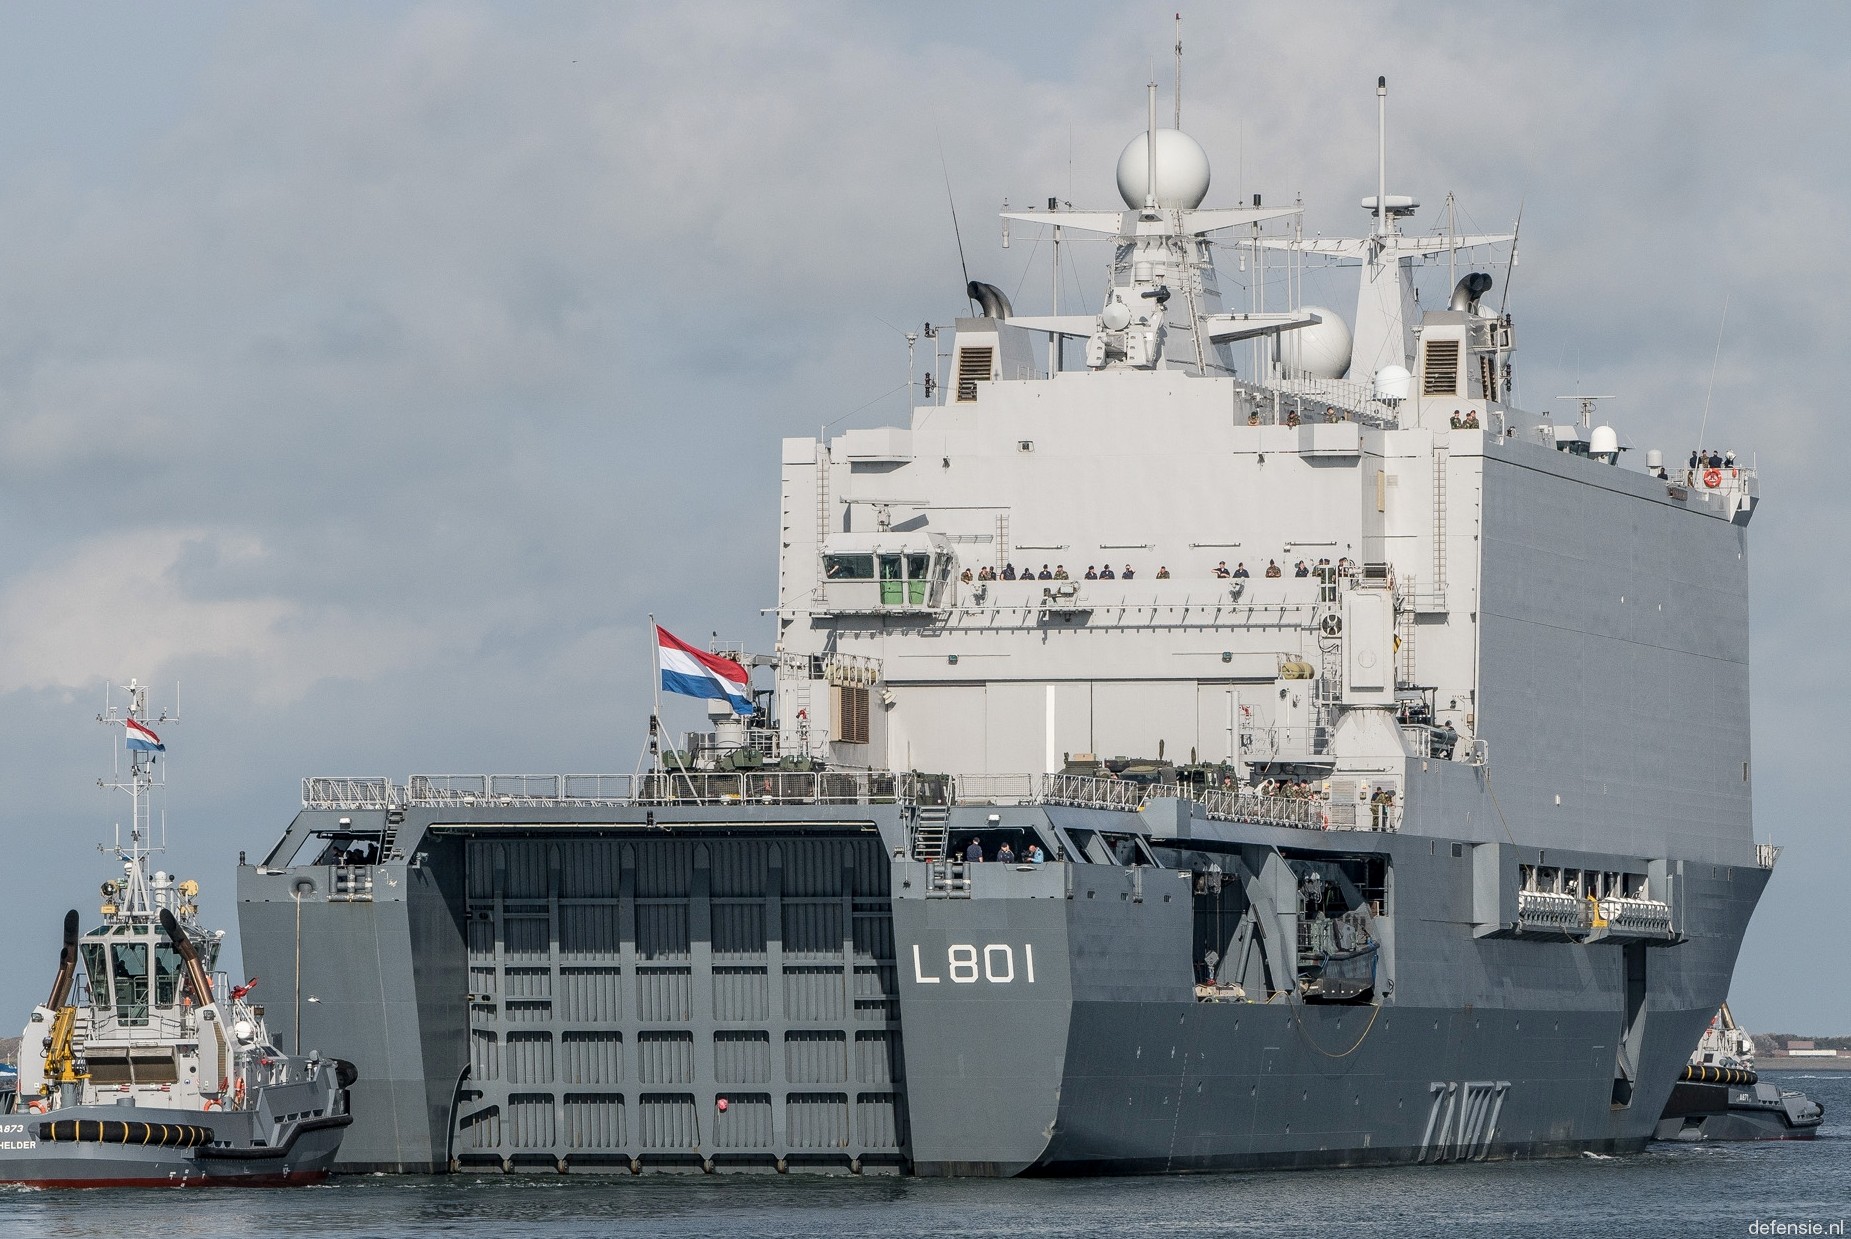 l-801 hnlms johan de witt amphibious ship landing platform dock lpd royal netherlands navy 08